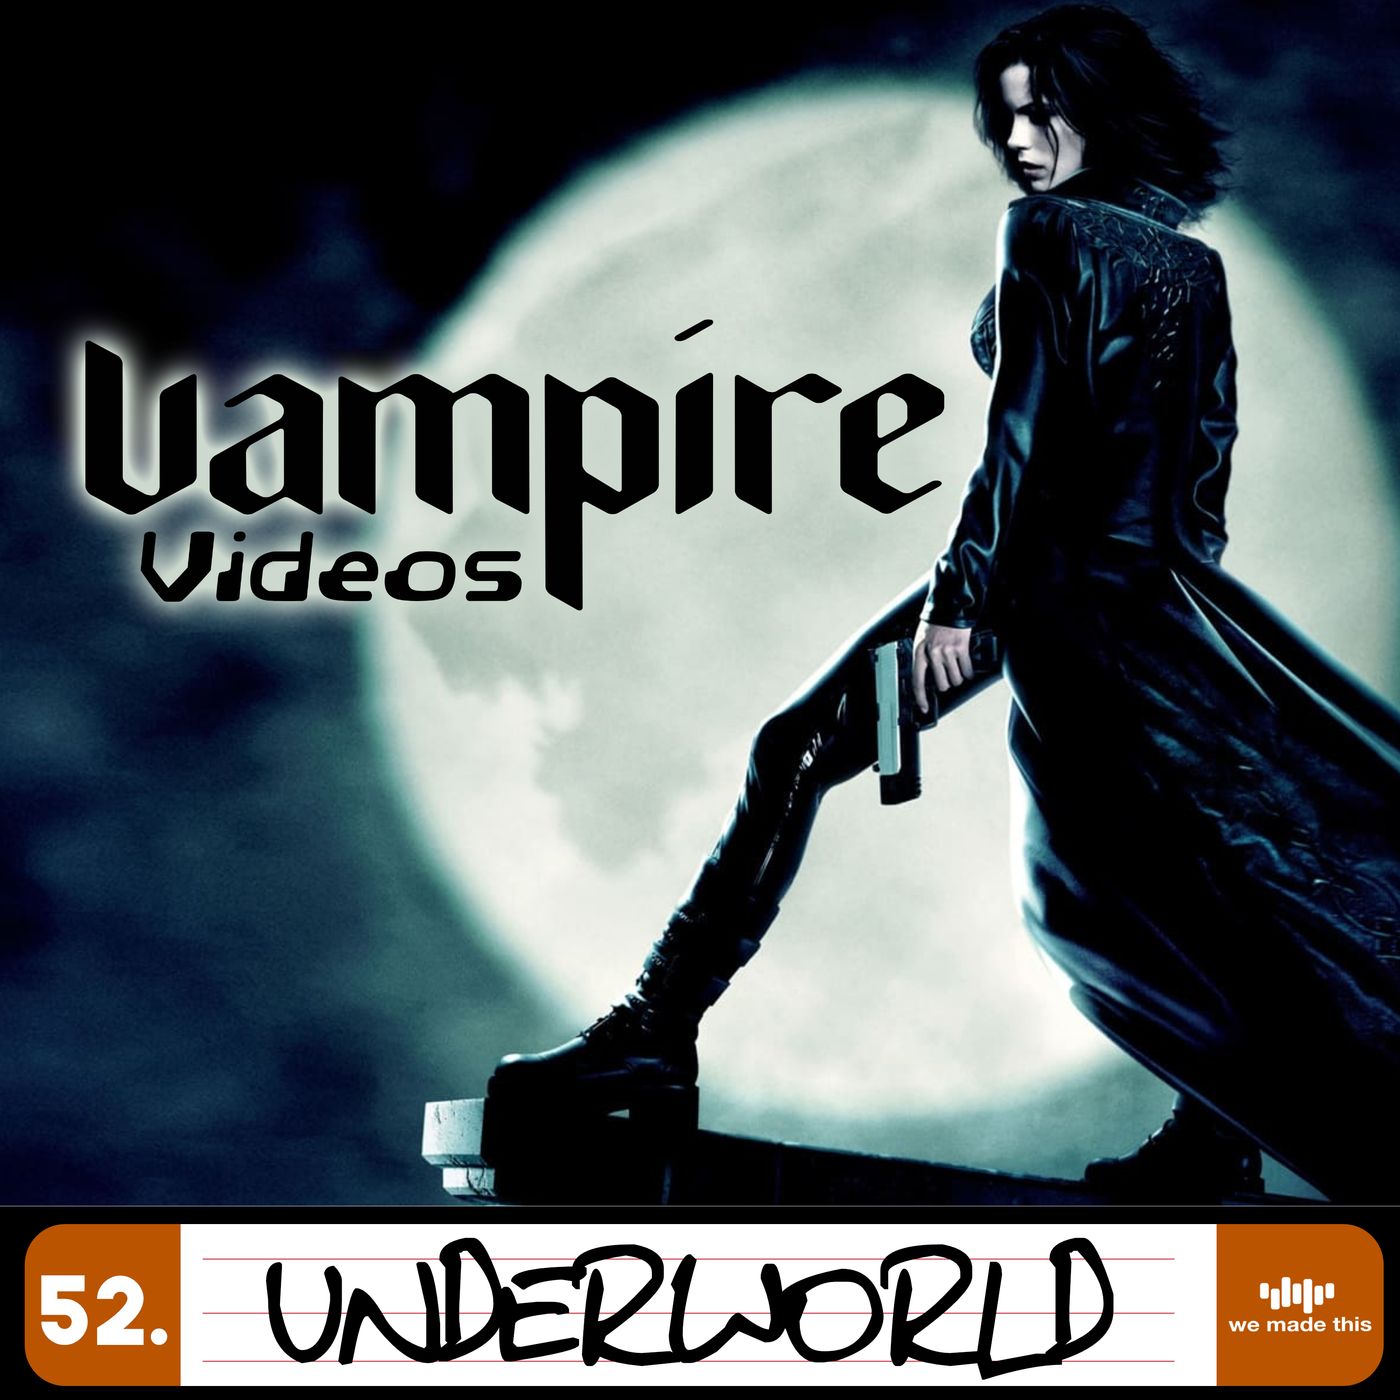 52. Underworld (2003) with Craig McKenzie